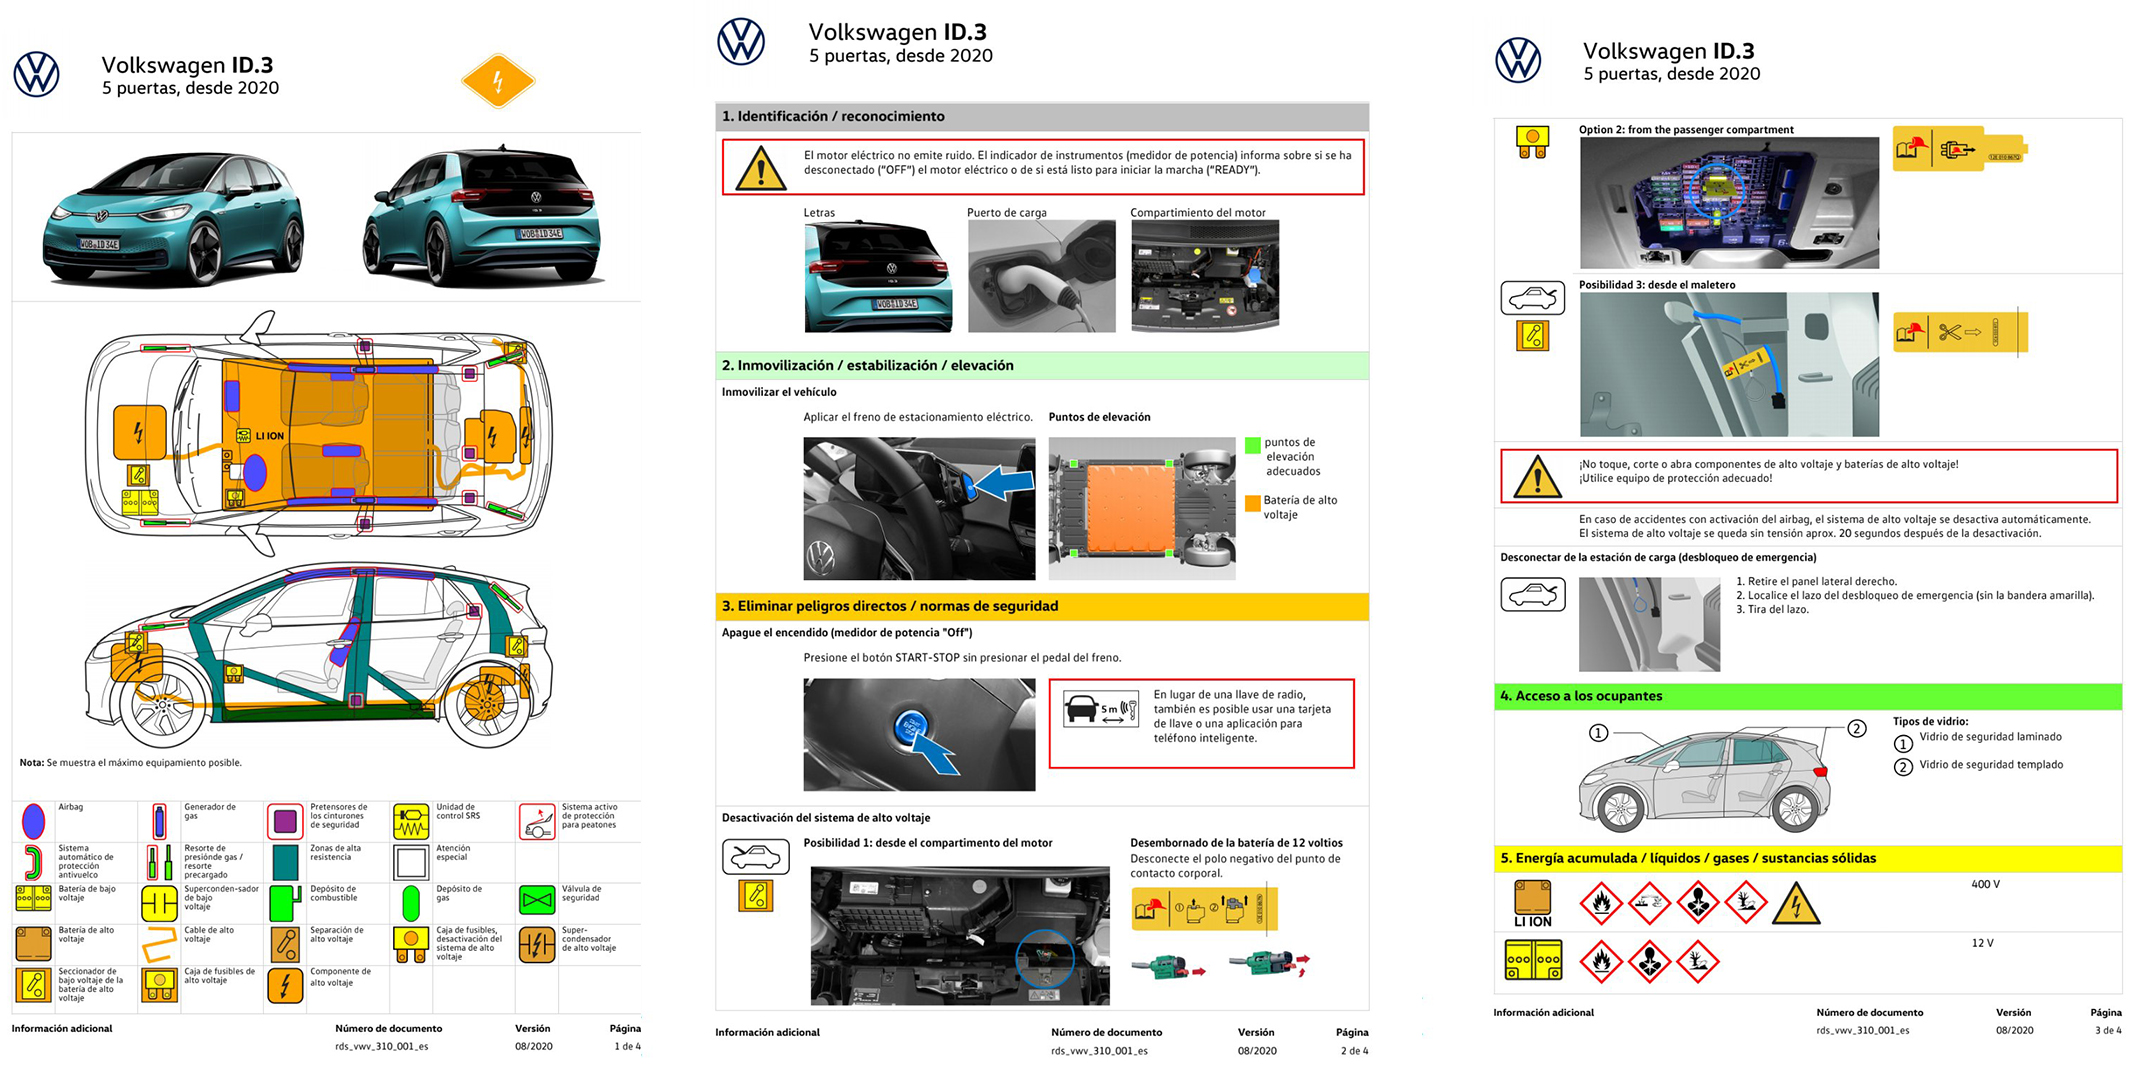 Hoja de rescate Volkswagen ID.3 - SoyMotor.com